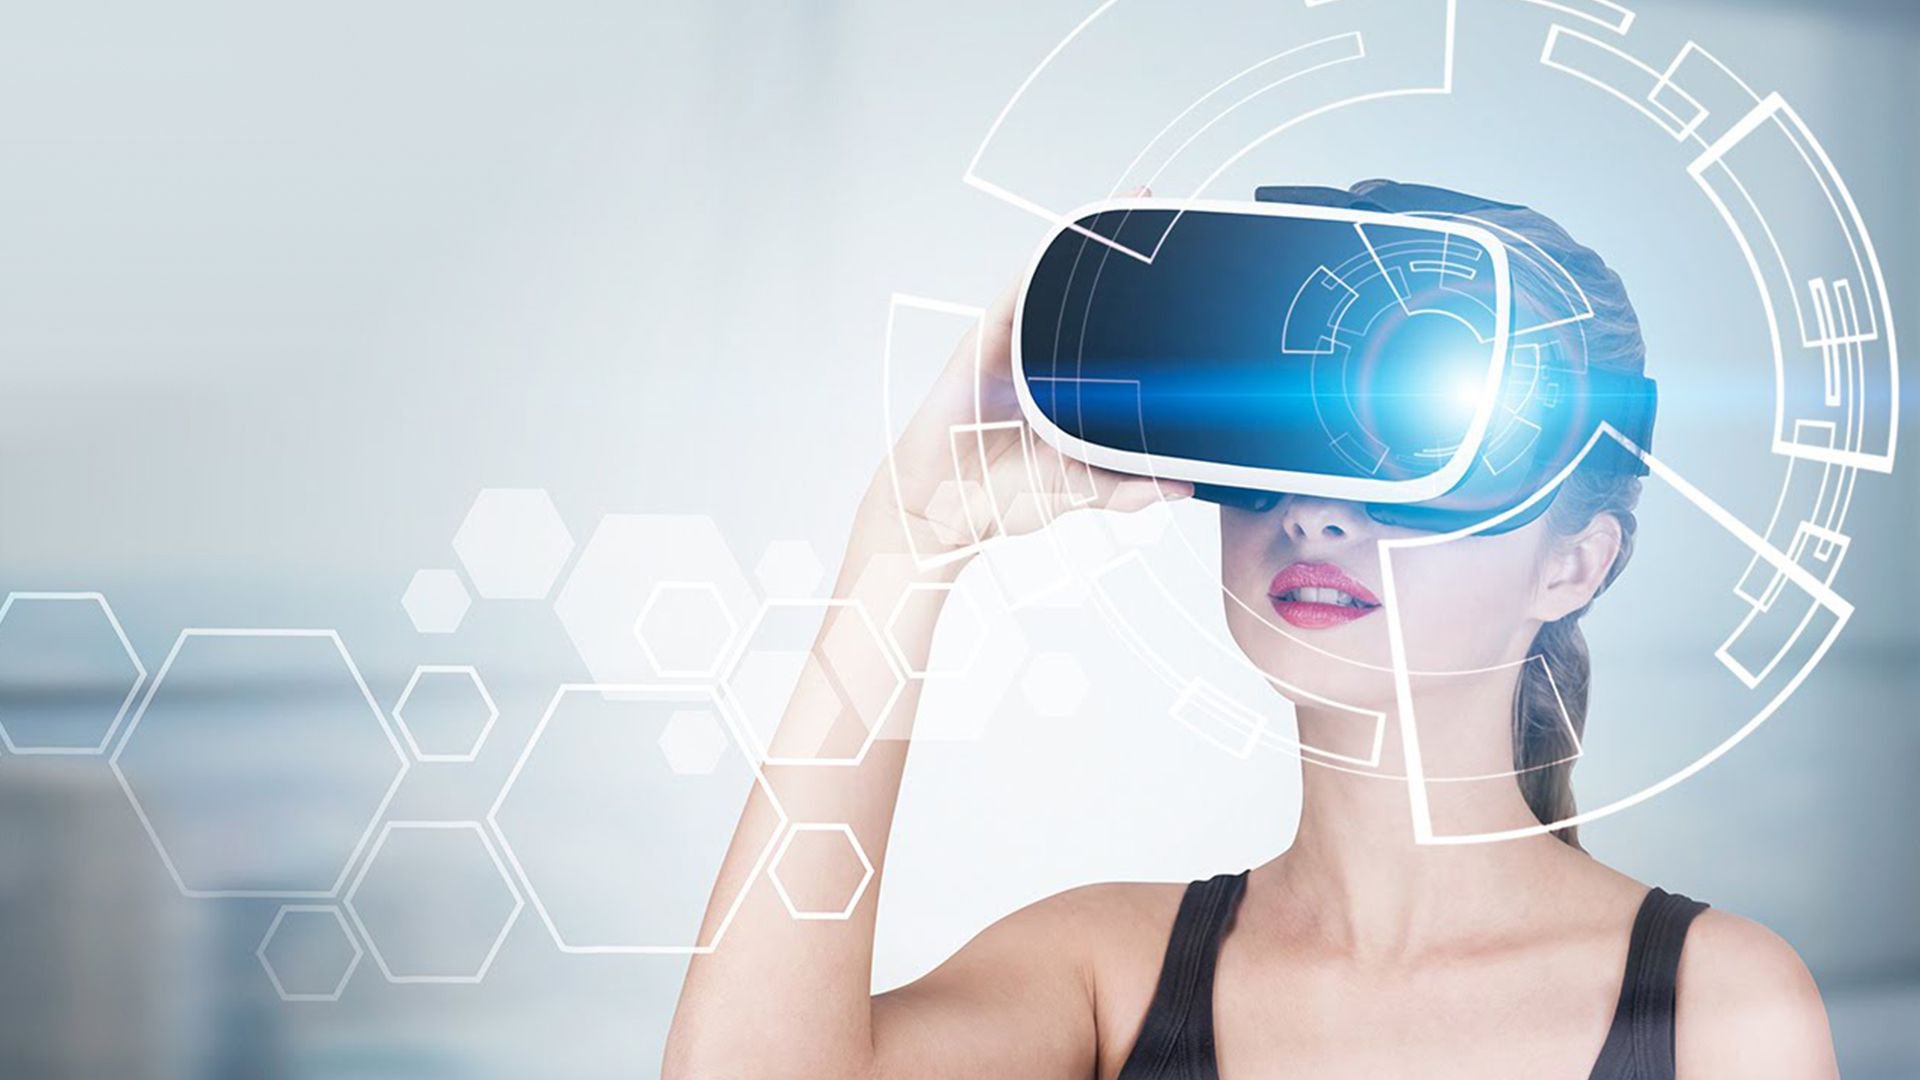 Картинка очки реальности. Очки дополненной реальности. VR технологии. VR виртуальная реальность. Технологии будущего.